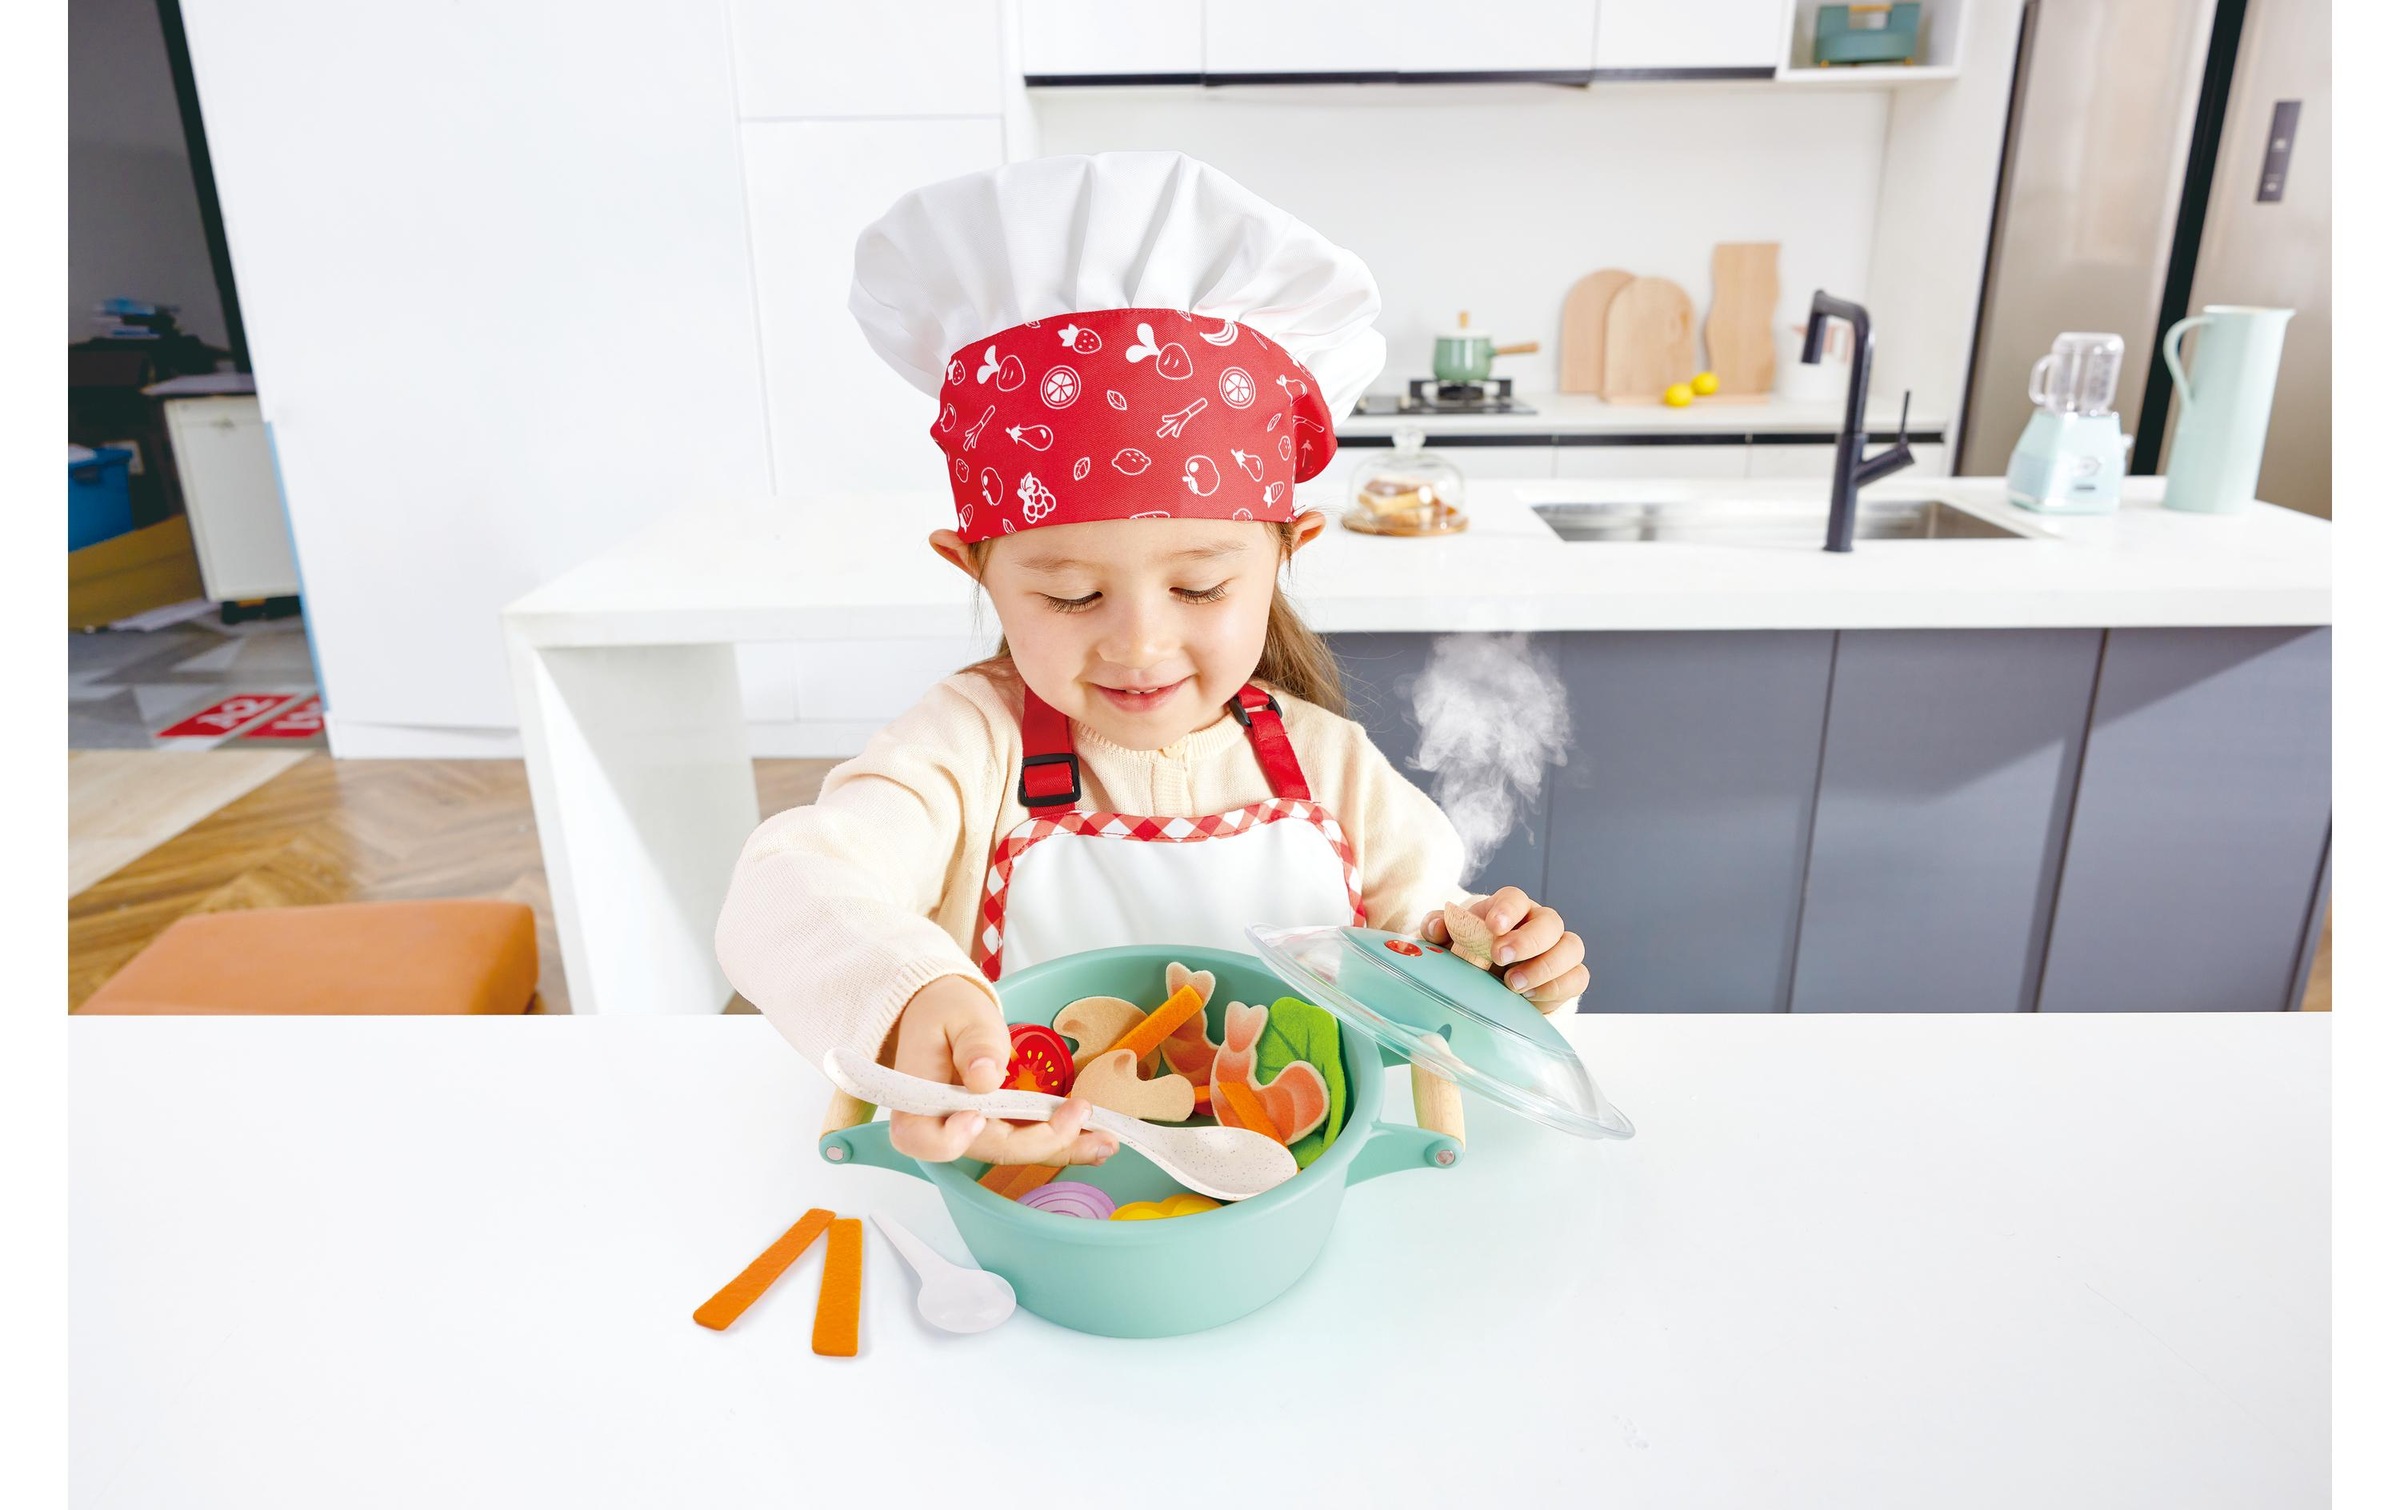 Hape Kinder-Küchenset »Kleiner Küchenchef Dampfgarer-Kochset«